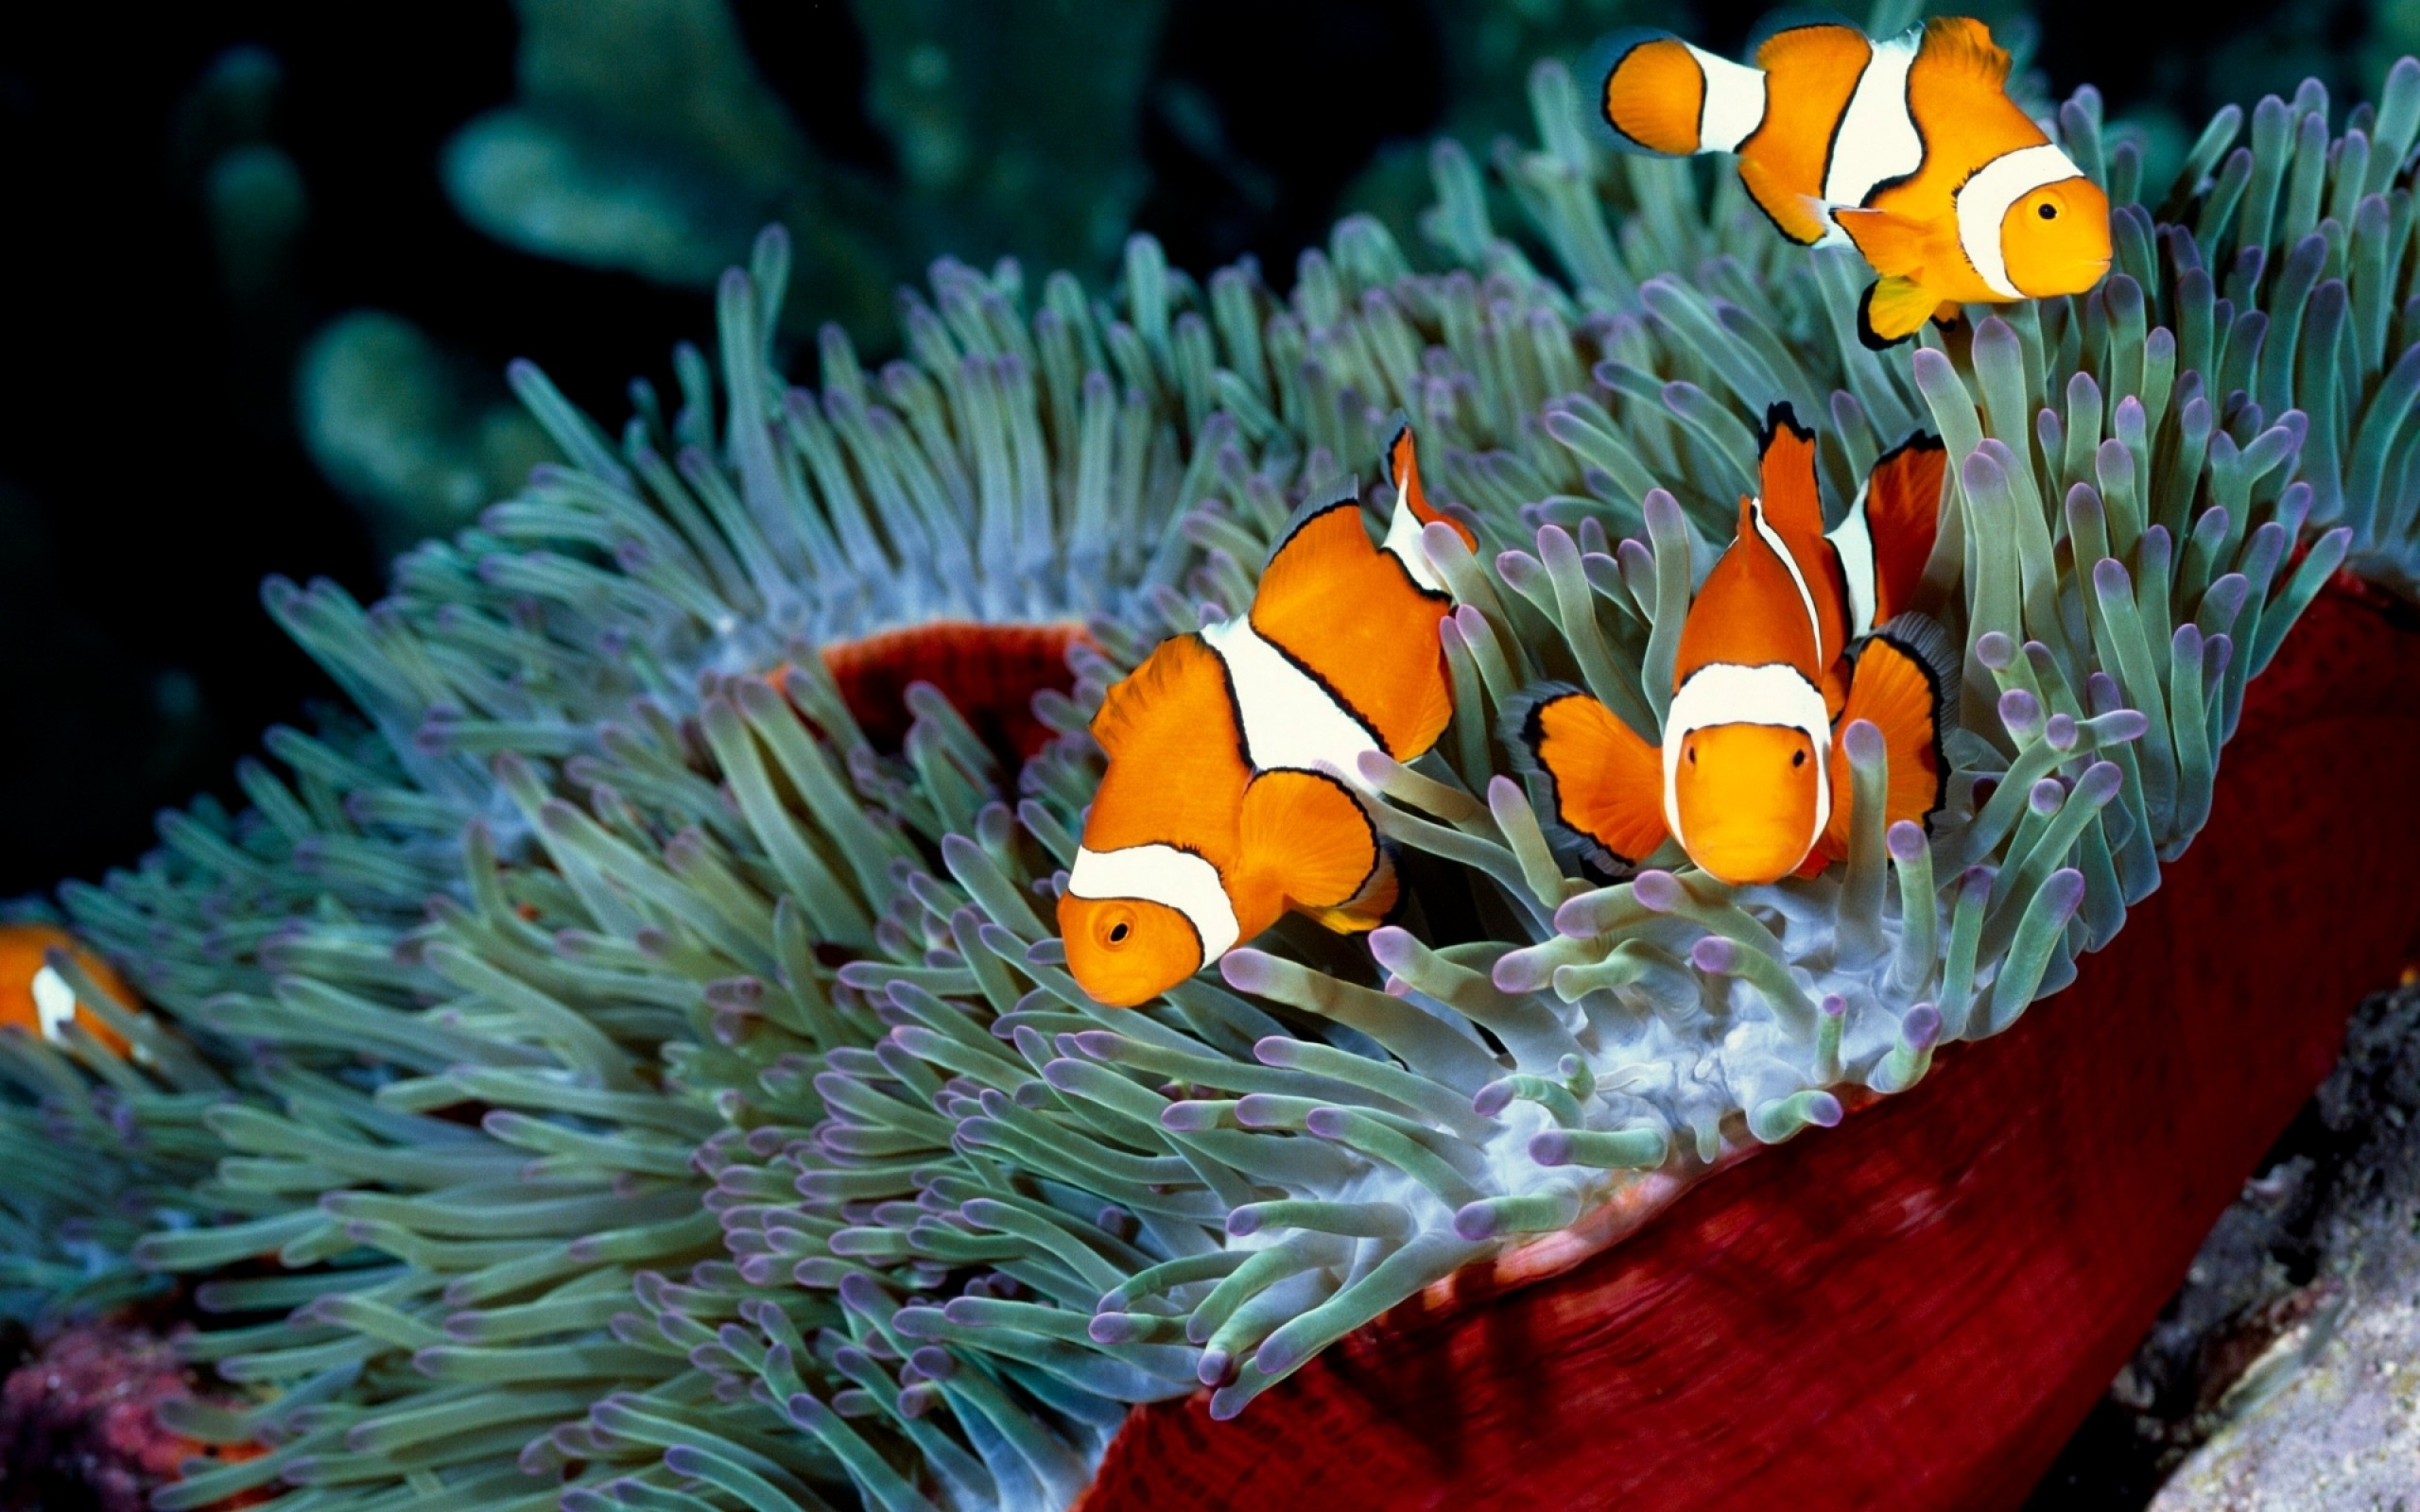 Exquisite clownfish, Sea creatures, Oceanic wonders, Underwater photography, 2560x1600 HD Desktop